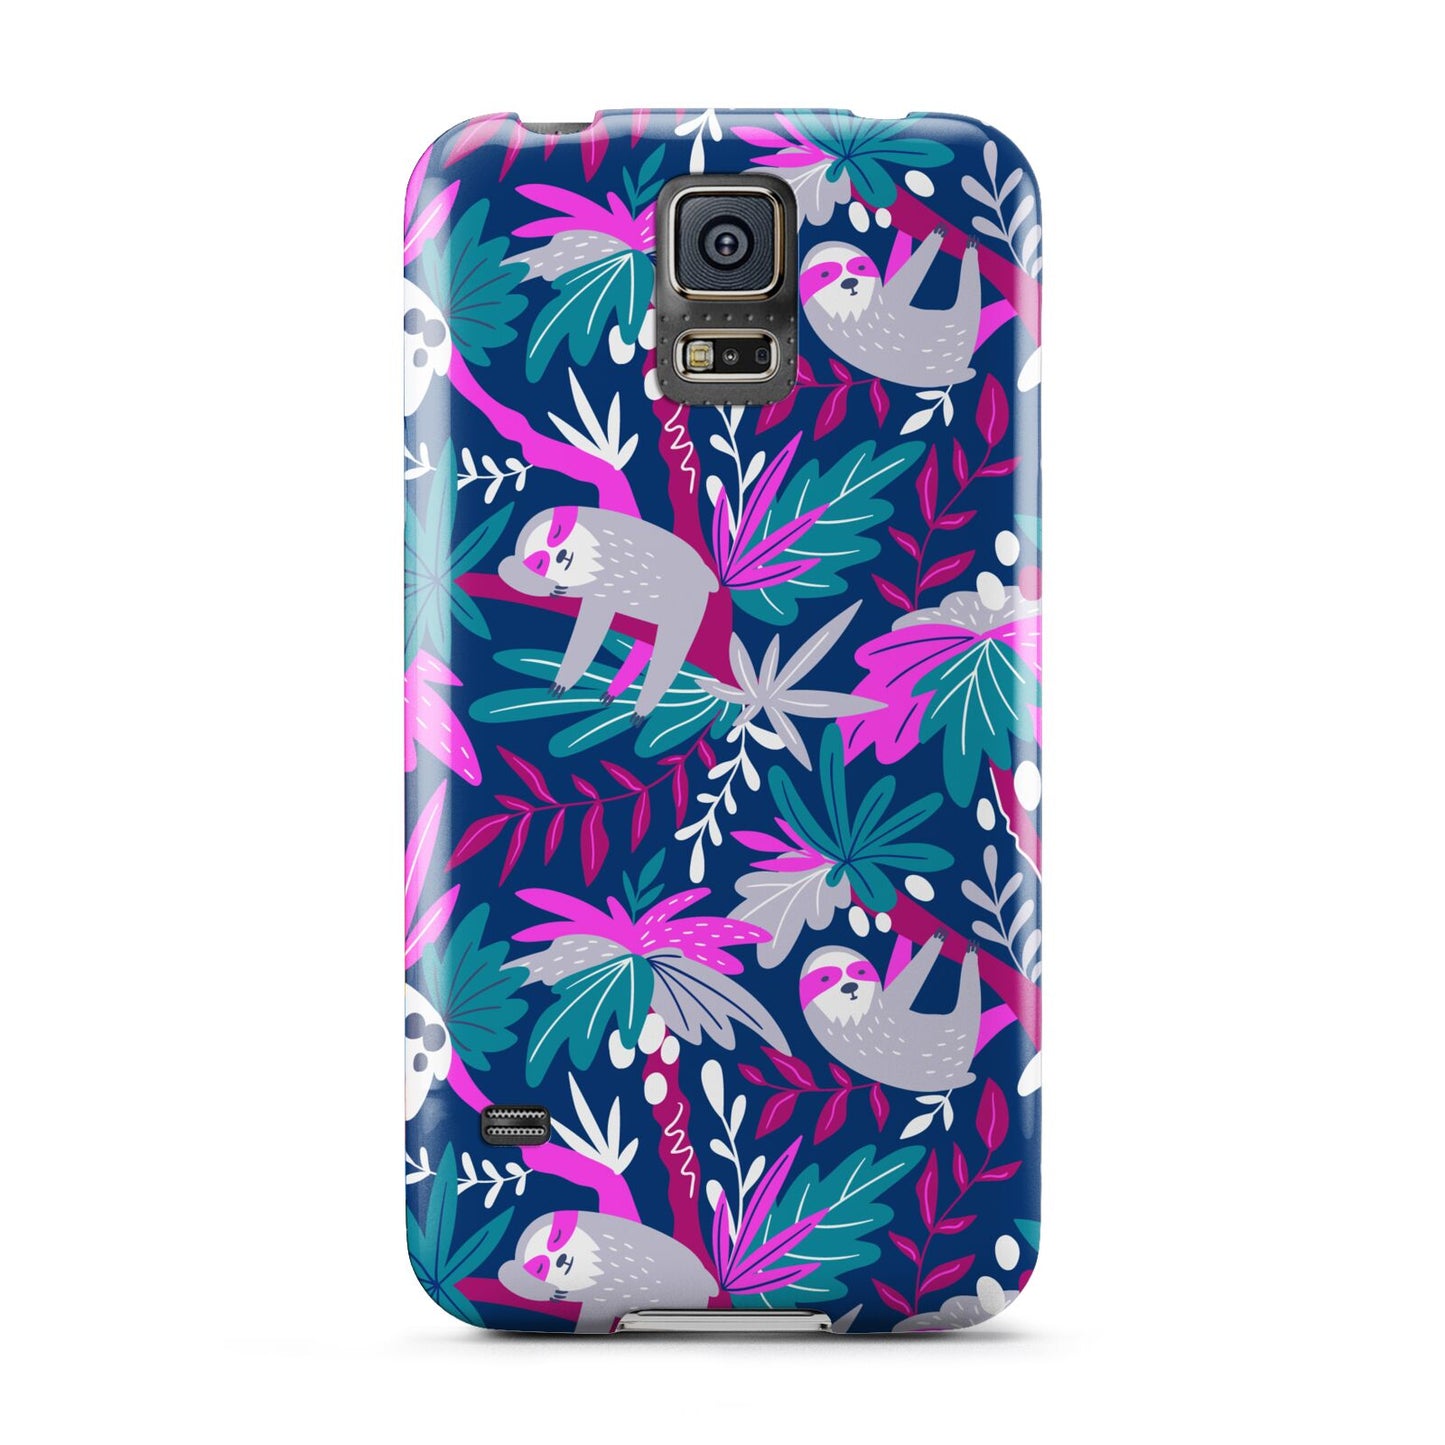 Sloth Samsung Galaxy S5 Case